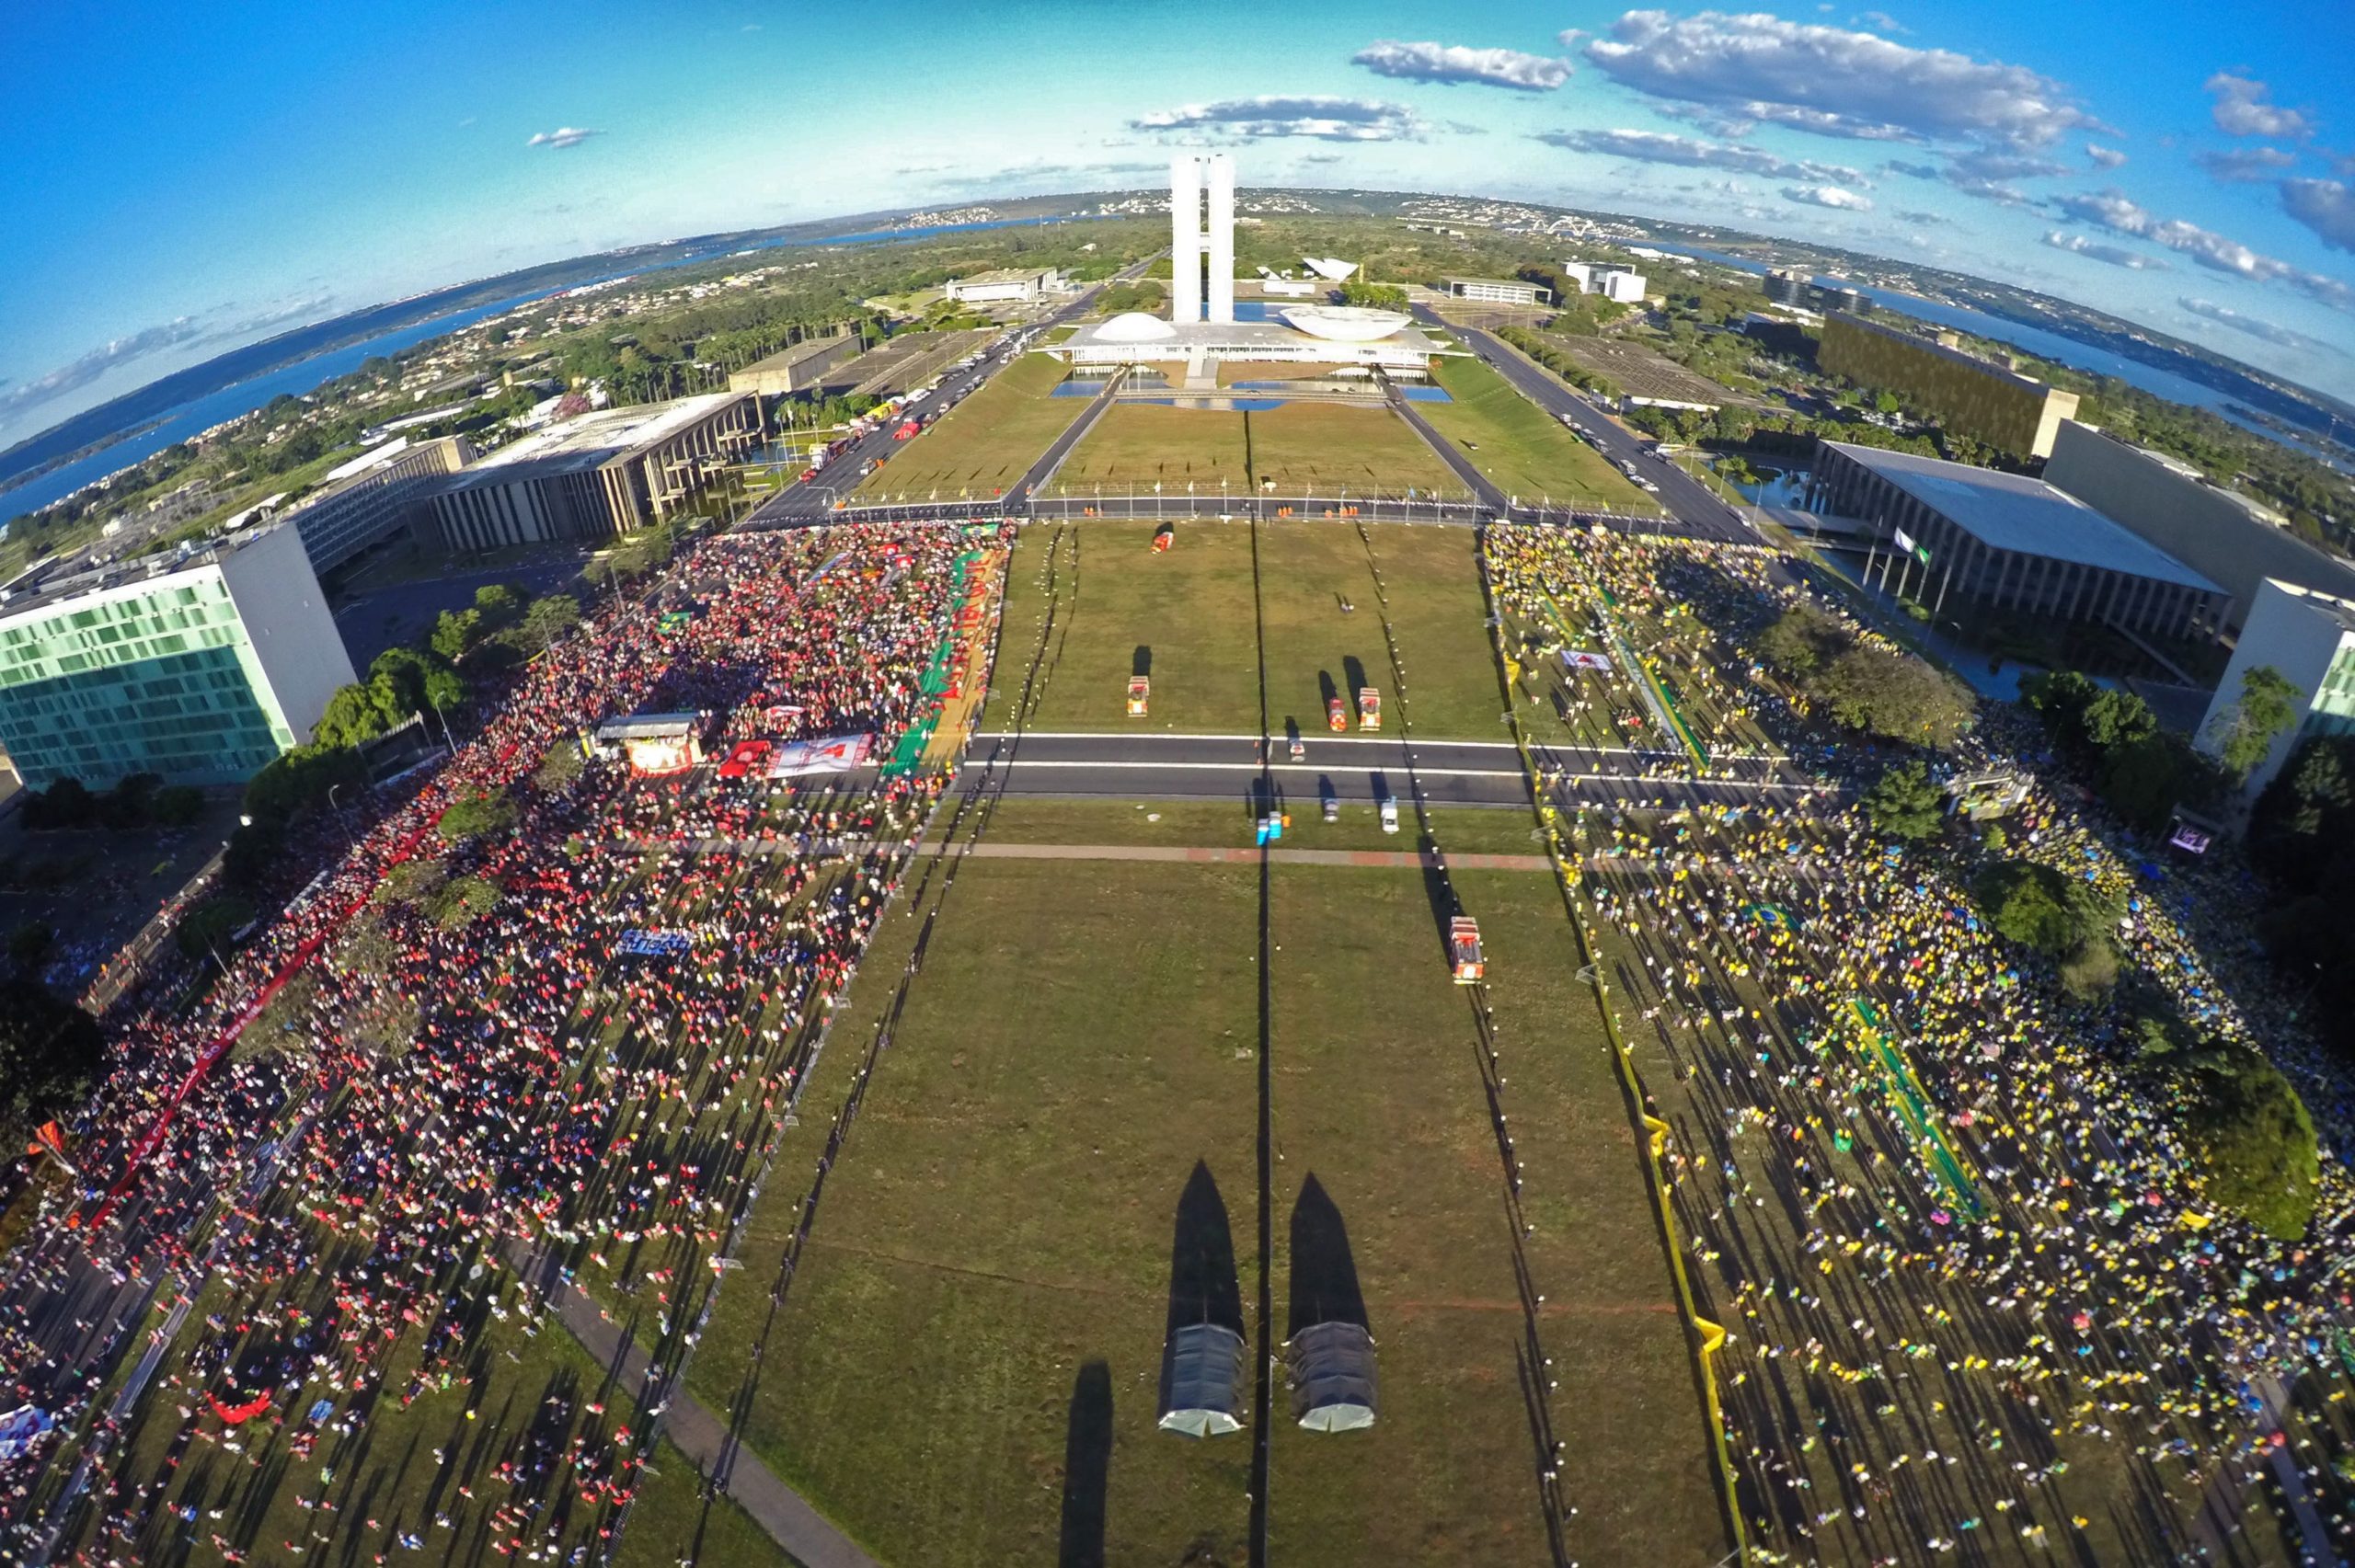 Manifestações em Brasília